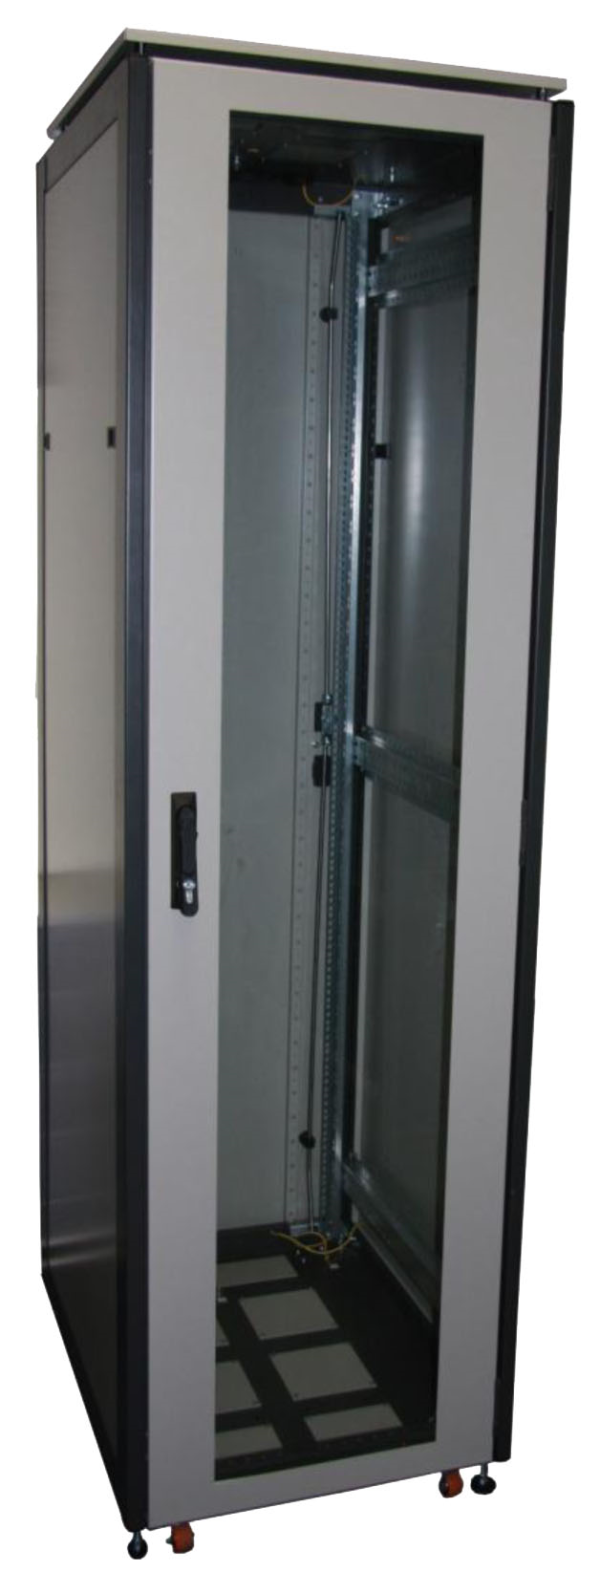 ССКТБ ТОМАСС ШТК-8618Э-00 - шкаф телекоммуникационный 19", 37U, 800х600х1800 мм, с металлической и стеклянной дверью